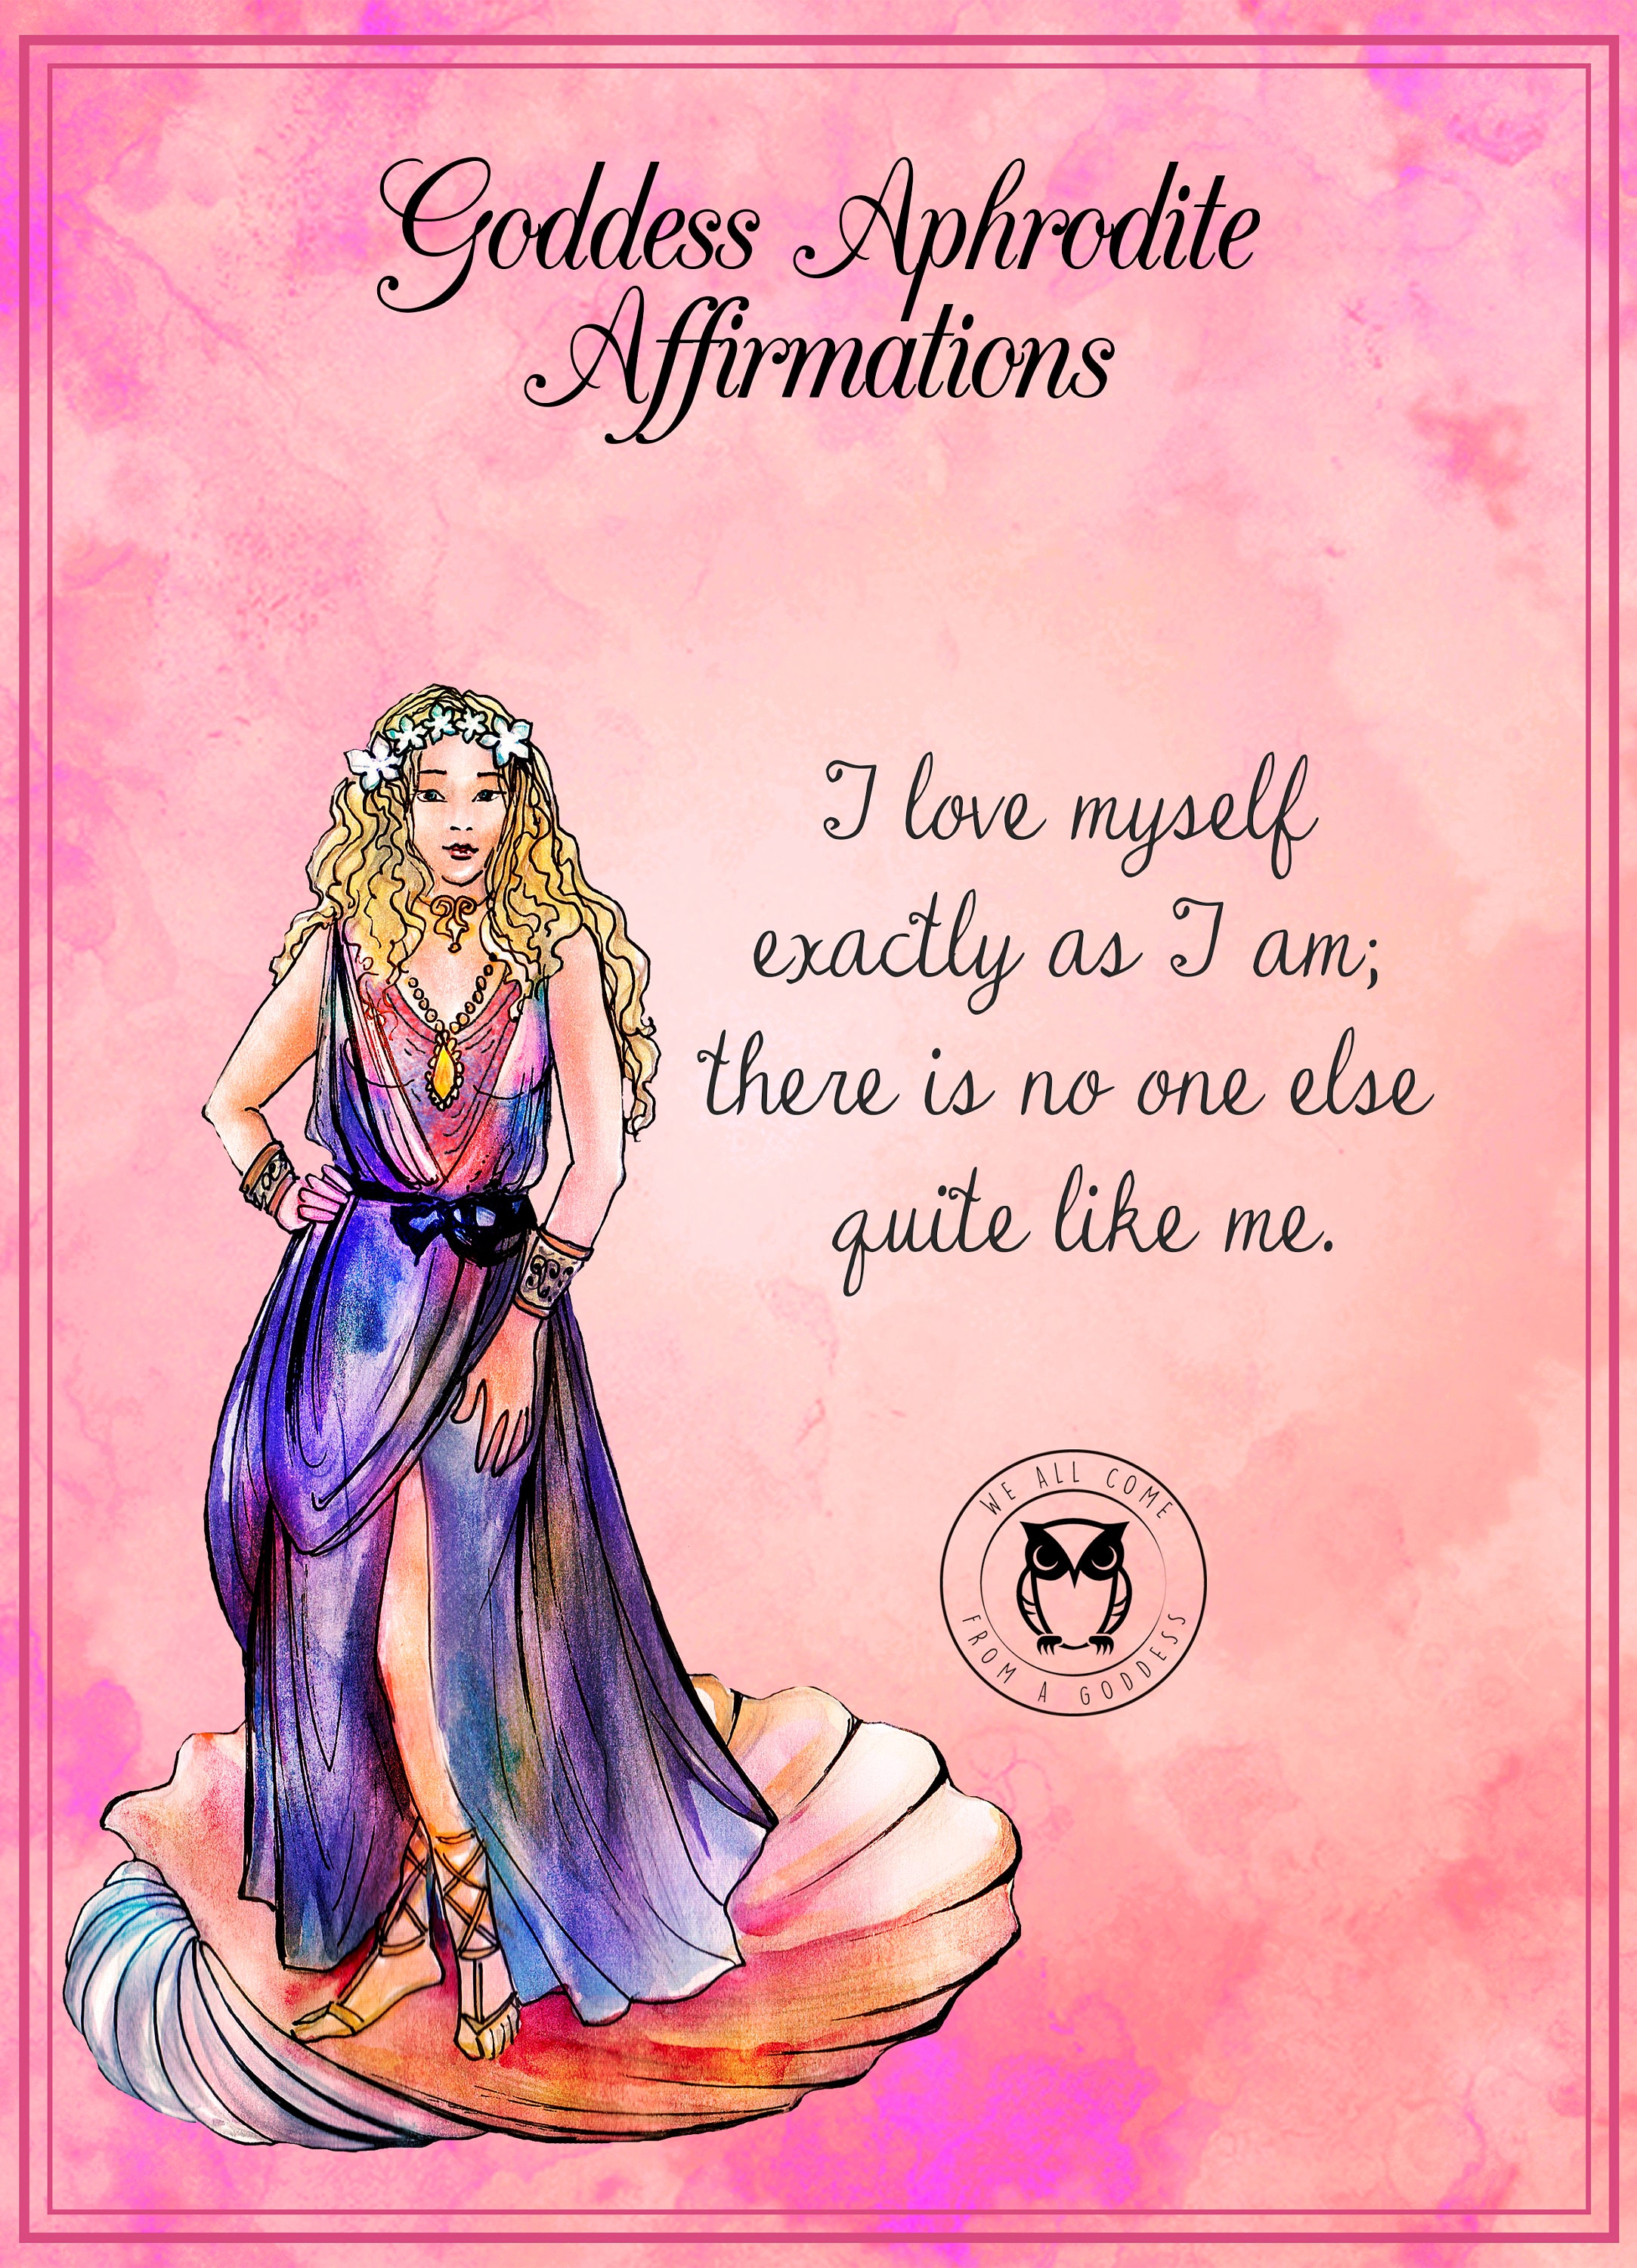 Are You an Aphrodite Goddess Aphrodite Affirmation Cards 20